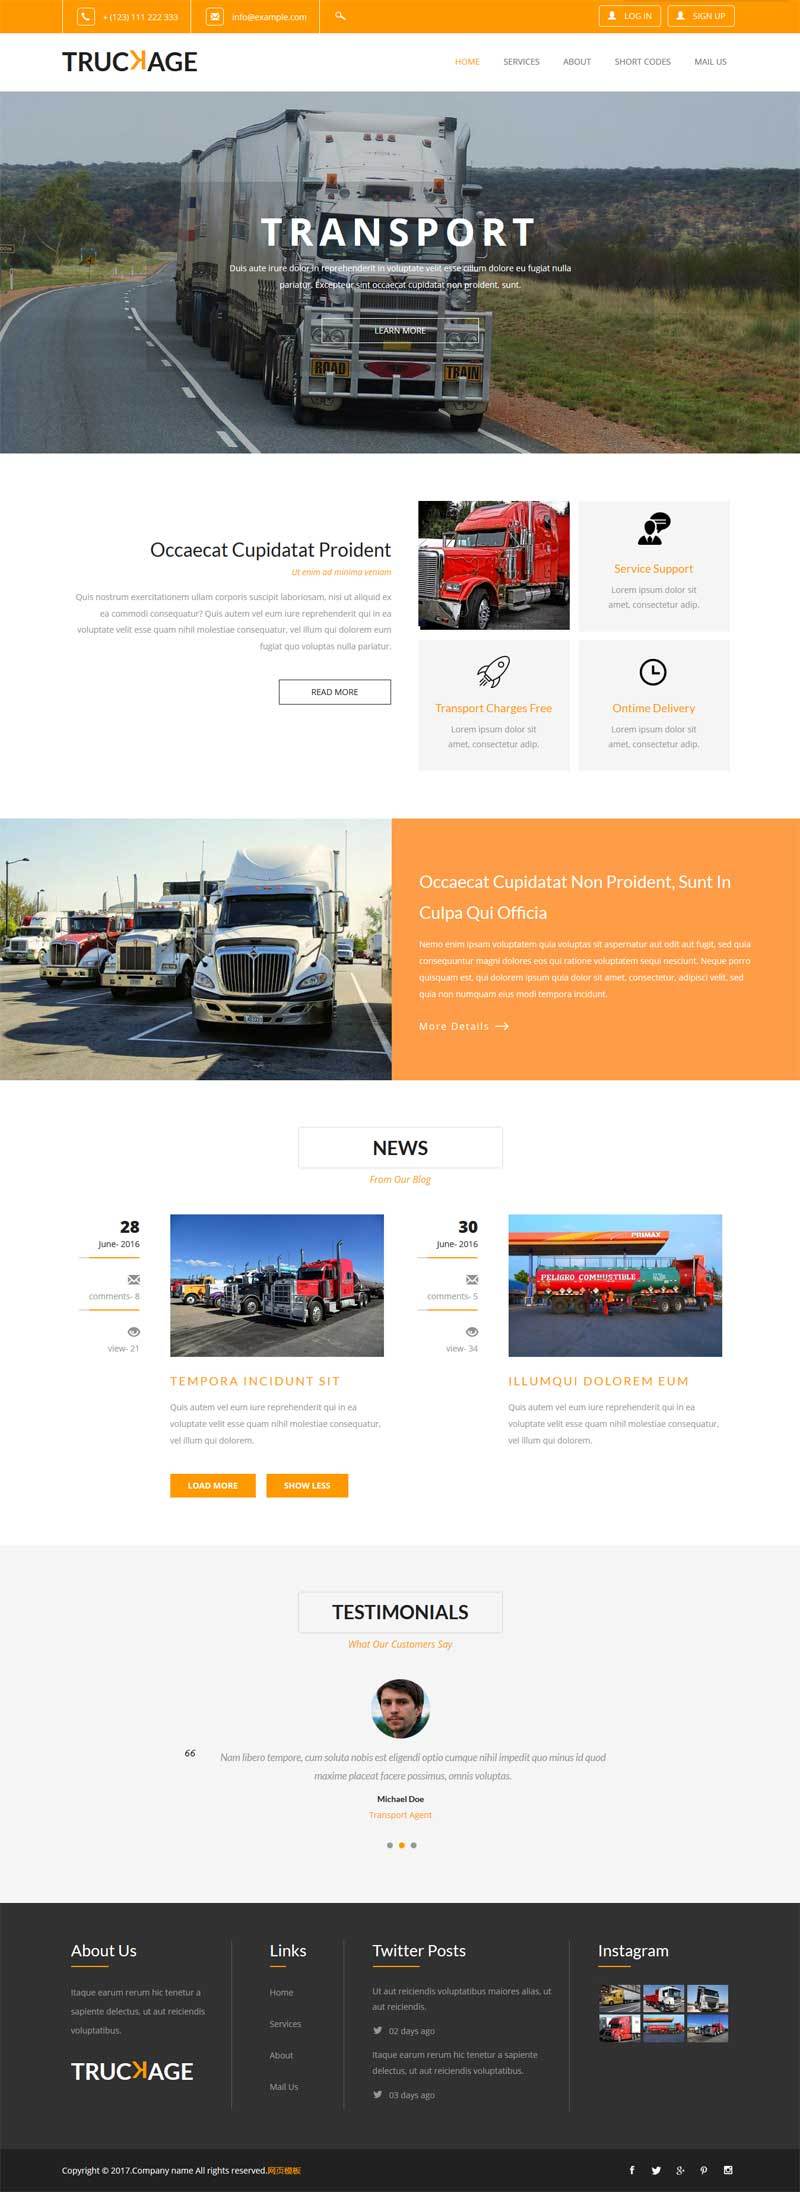 大货车物流运输企业网站宽屏欧美风格的模板下载